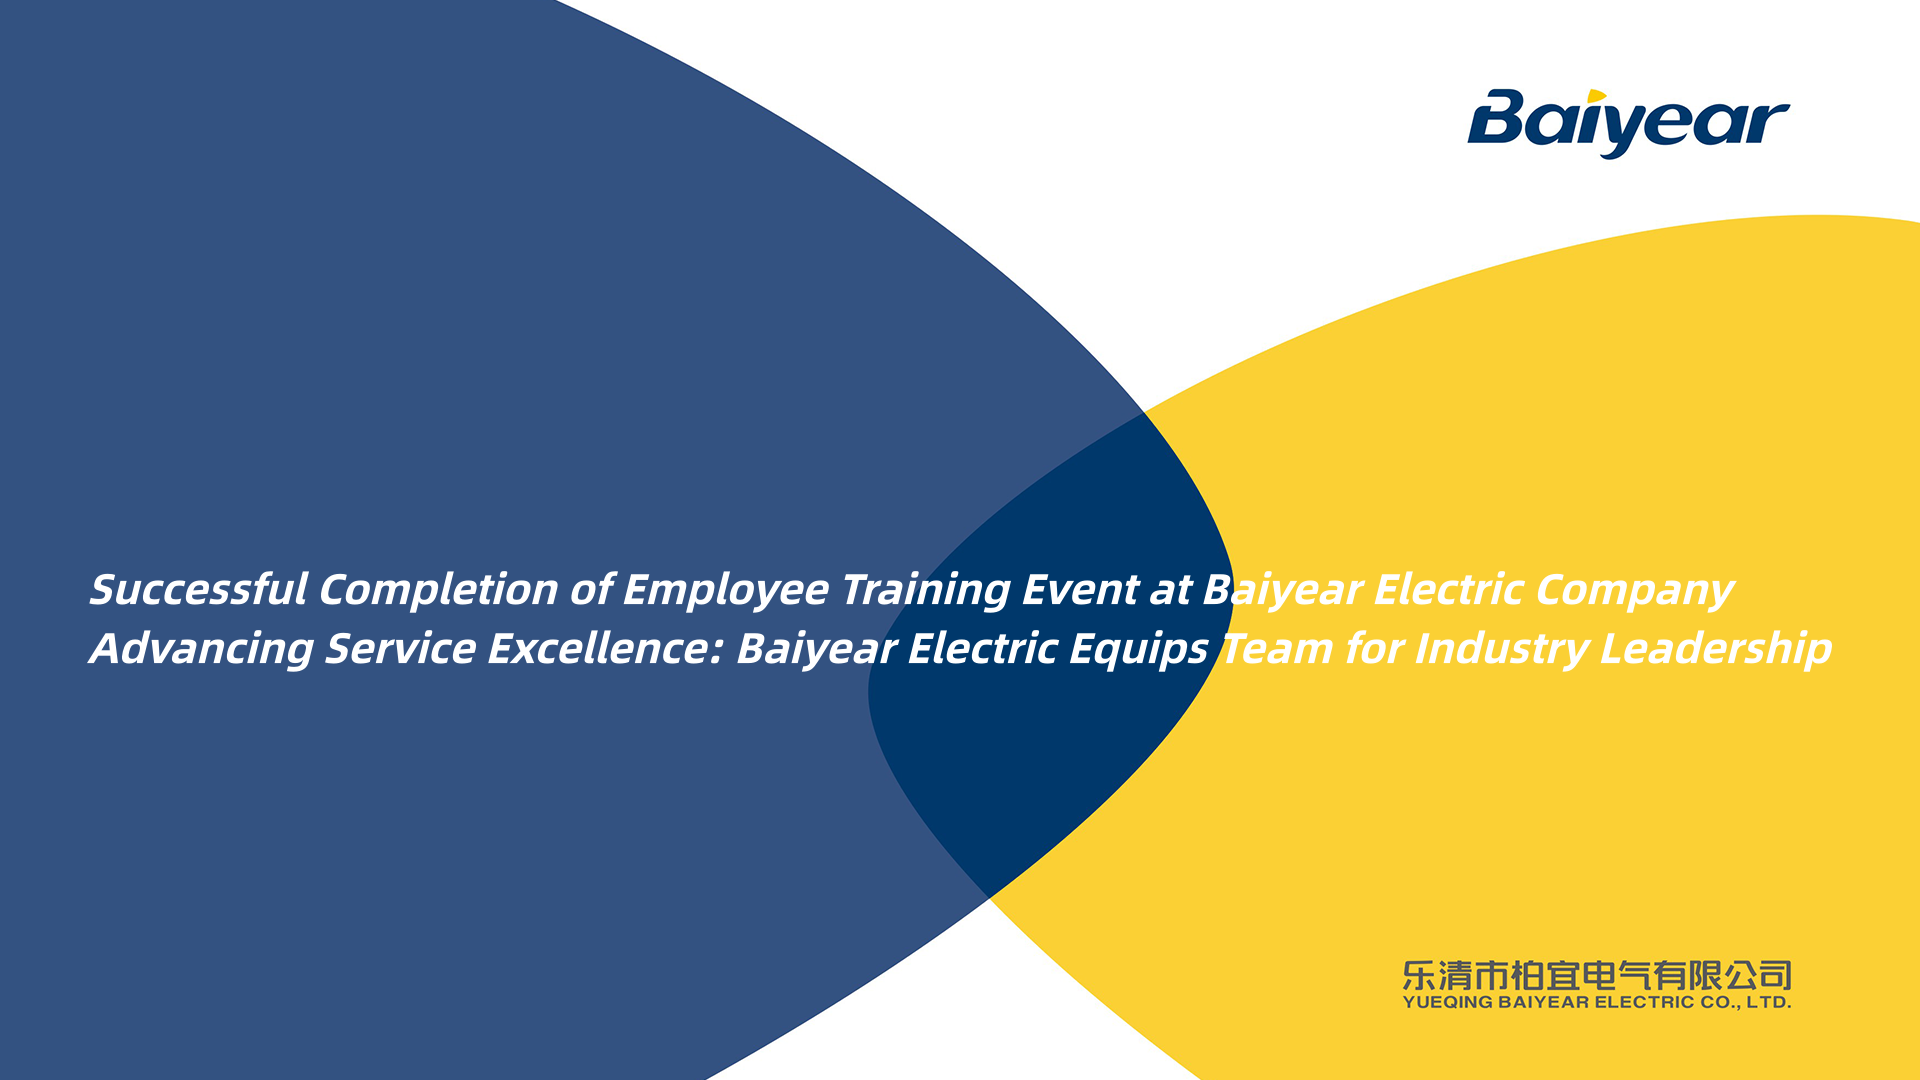 Finalització amb èxit de l'esdeveniment de formació d'empleats a Baiyear Electric Company